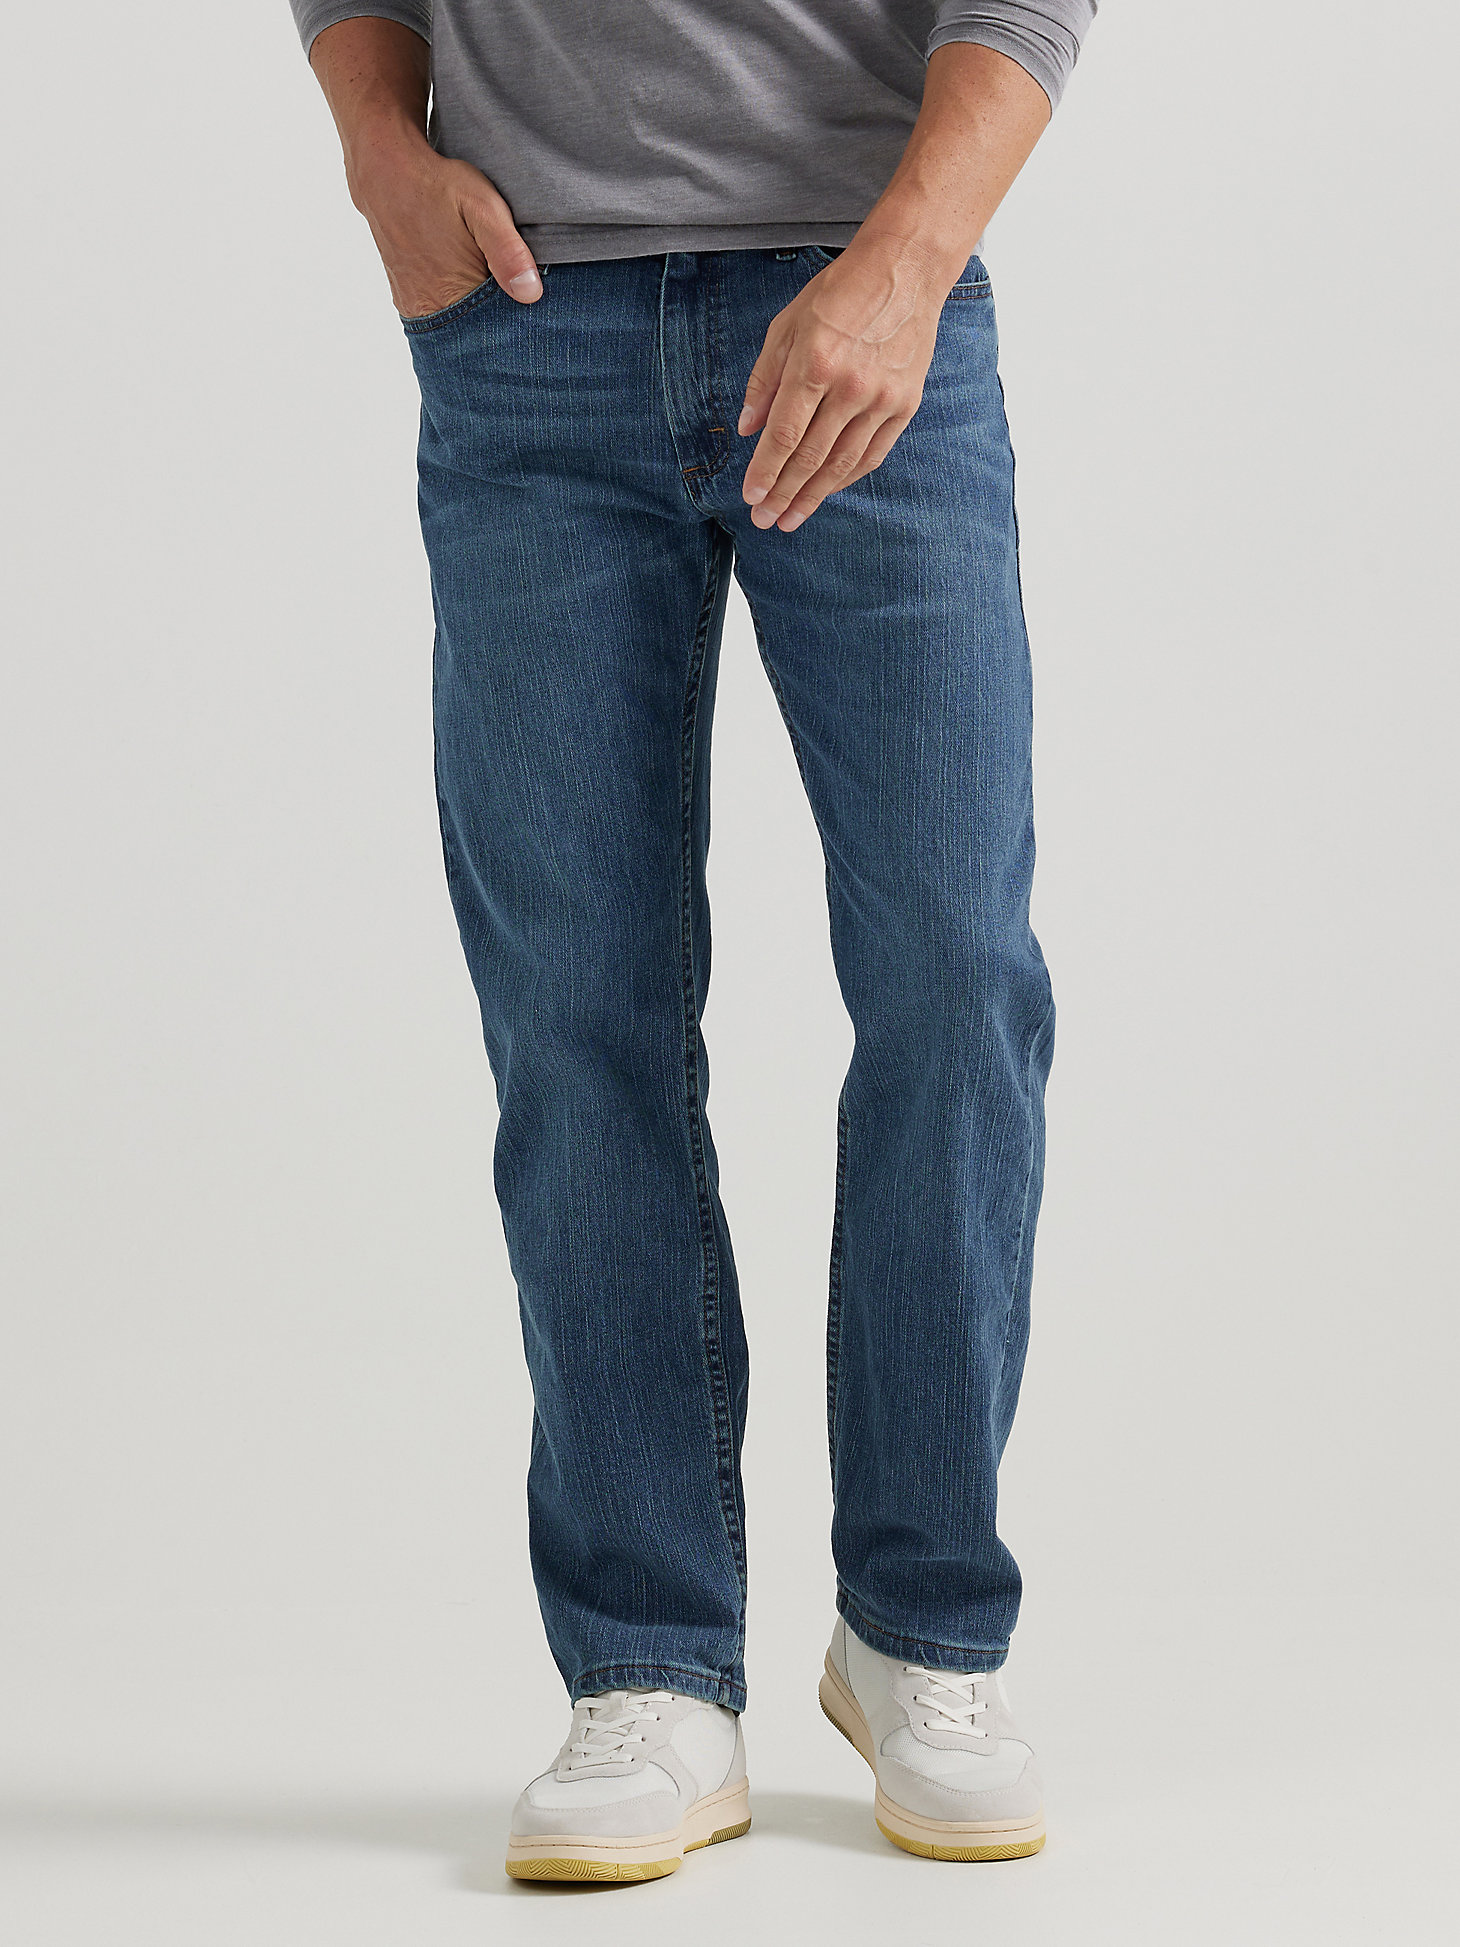 Men's Wrangler Authentics® Regular Fit Comfort Waist Jean in Blue Ocean main view